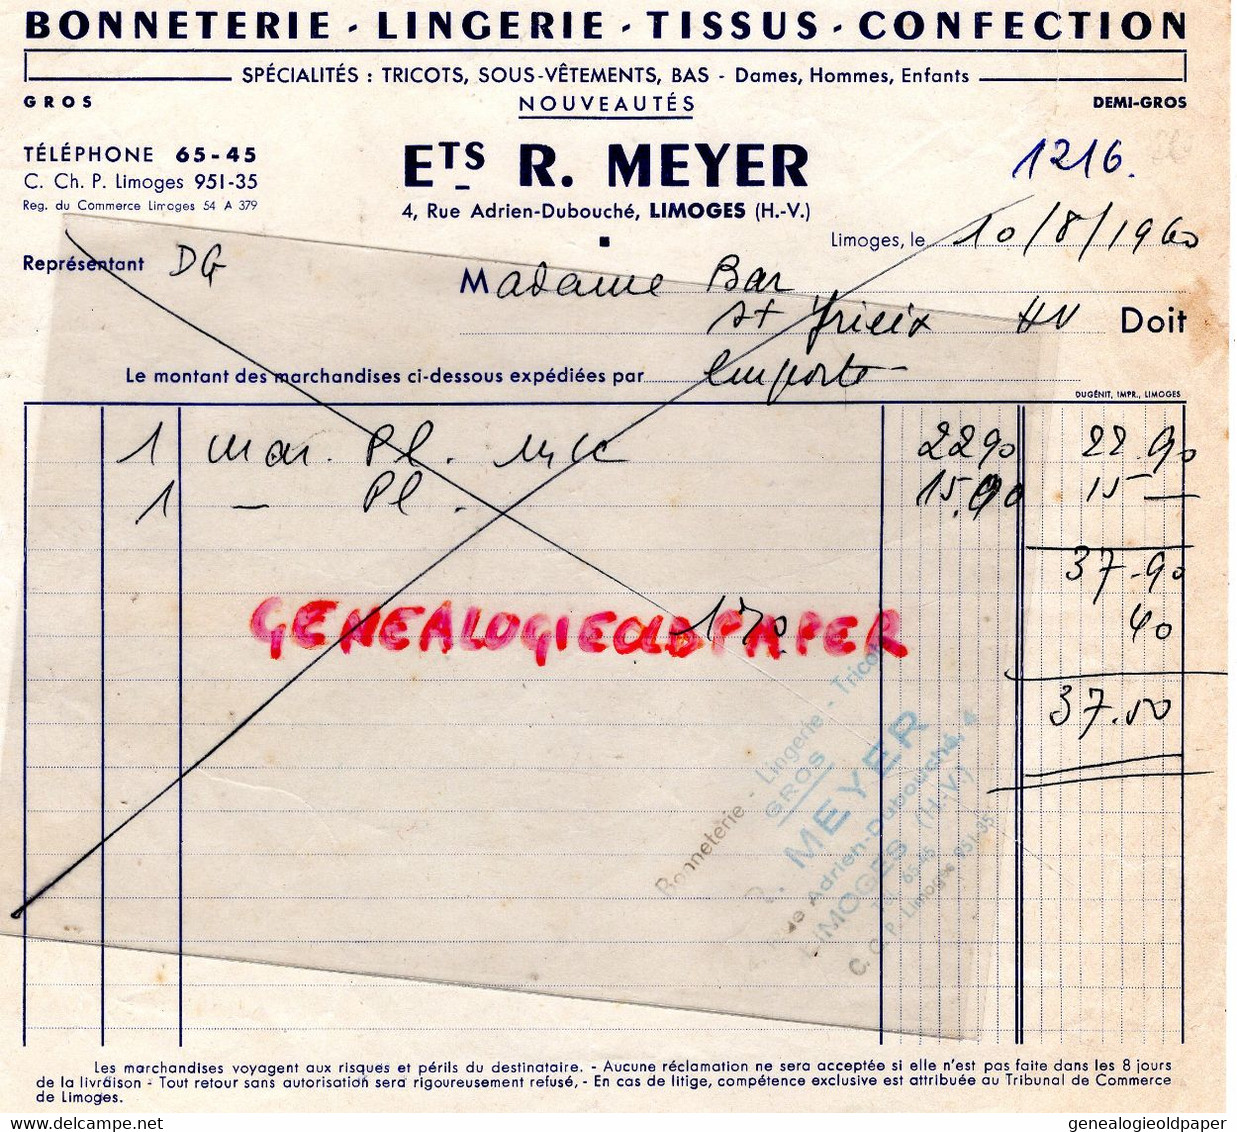 87- LIMOGES- FACTURE BONNETERIE LINGERIE CONFECTION R. MEYER-4 RUE ADRIEN DUBOUCHE-MME BAR ST SAINT YRIEIX- 1960 - Kleidung & Textil